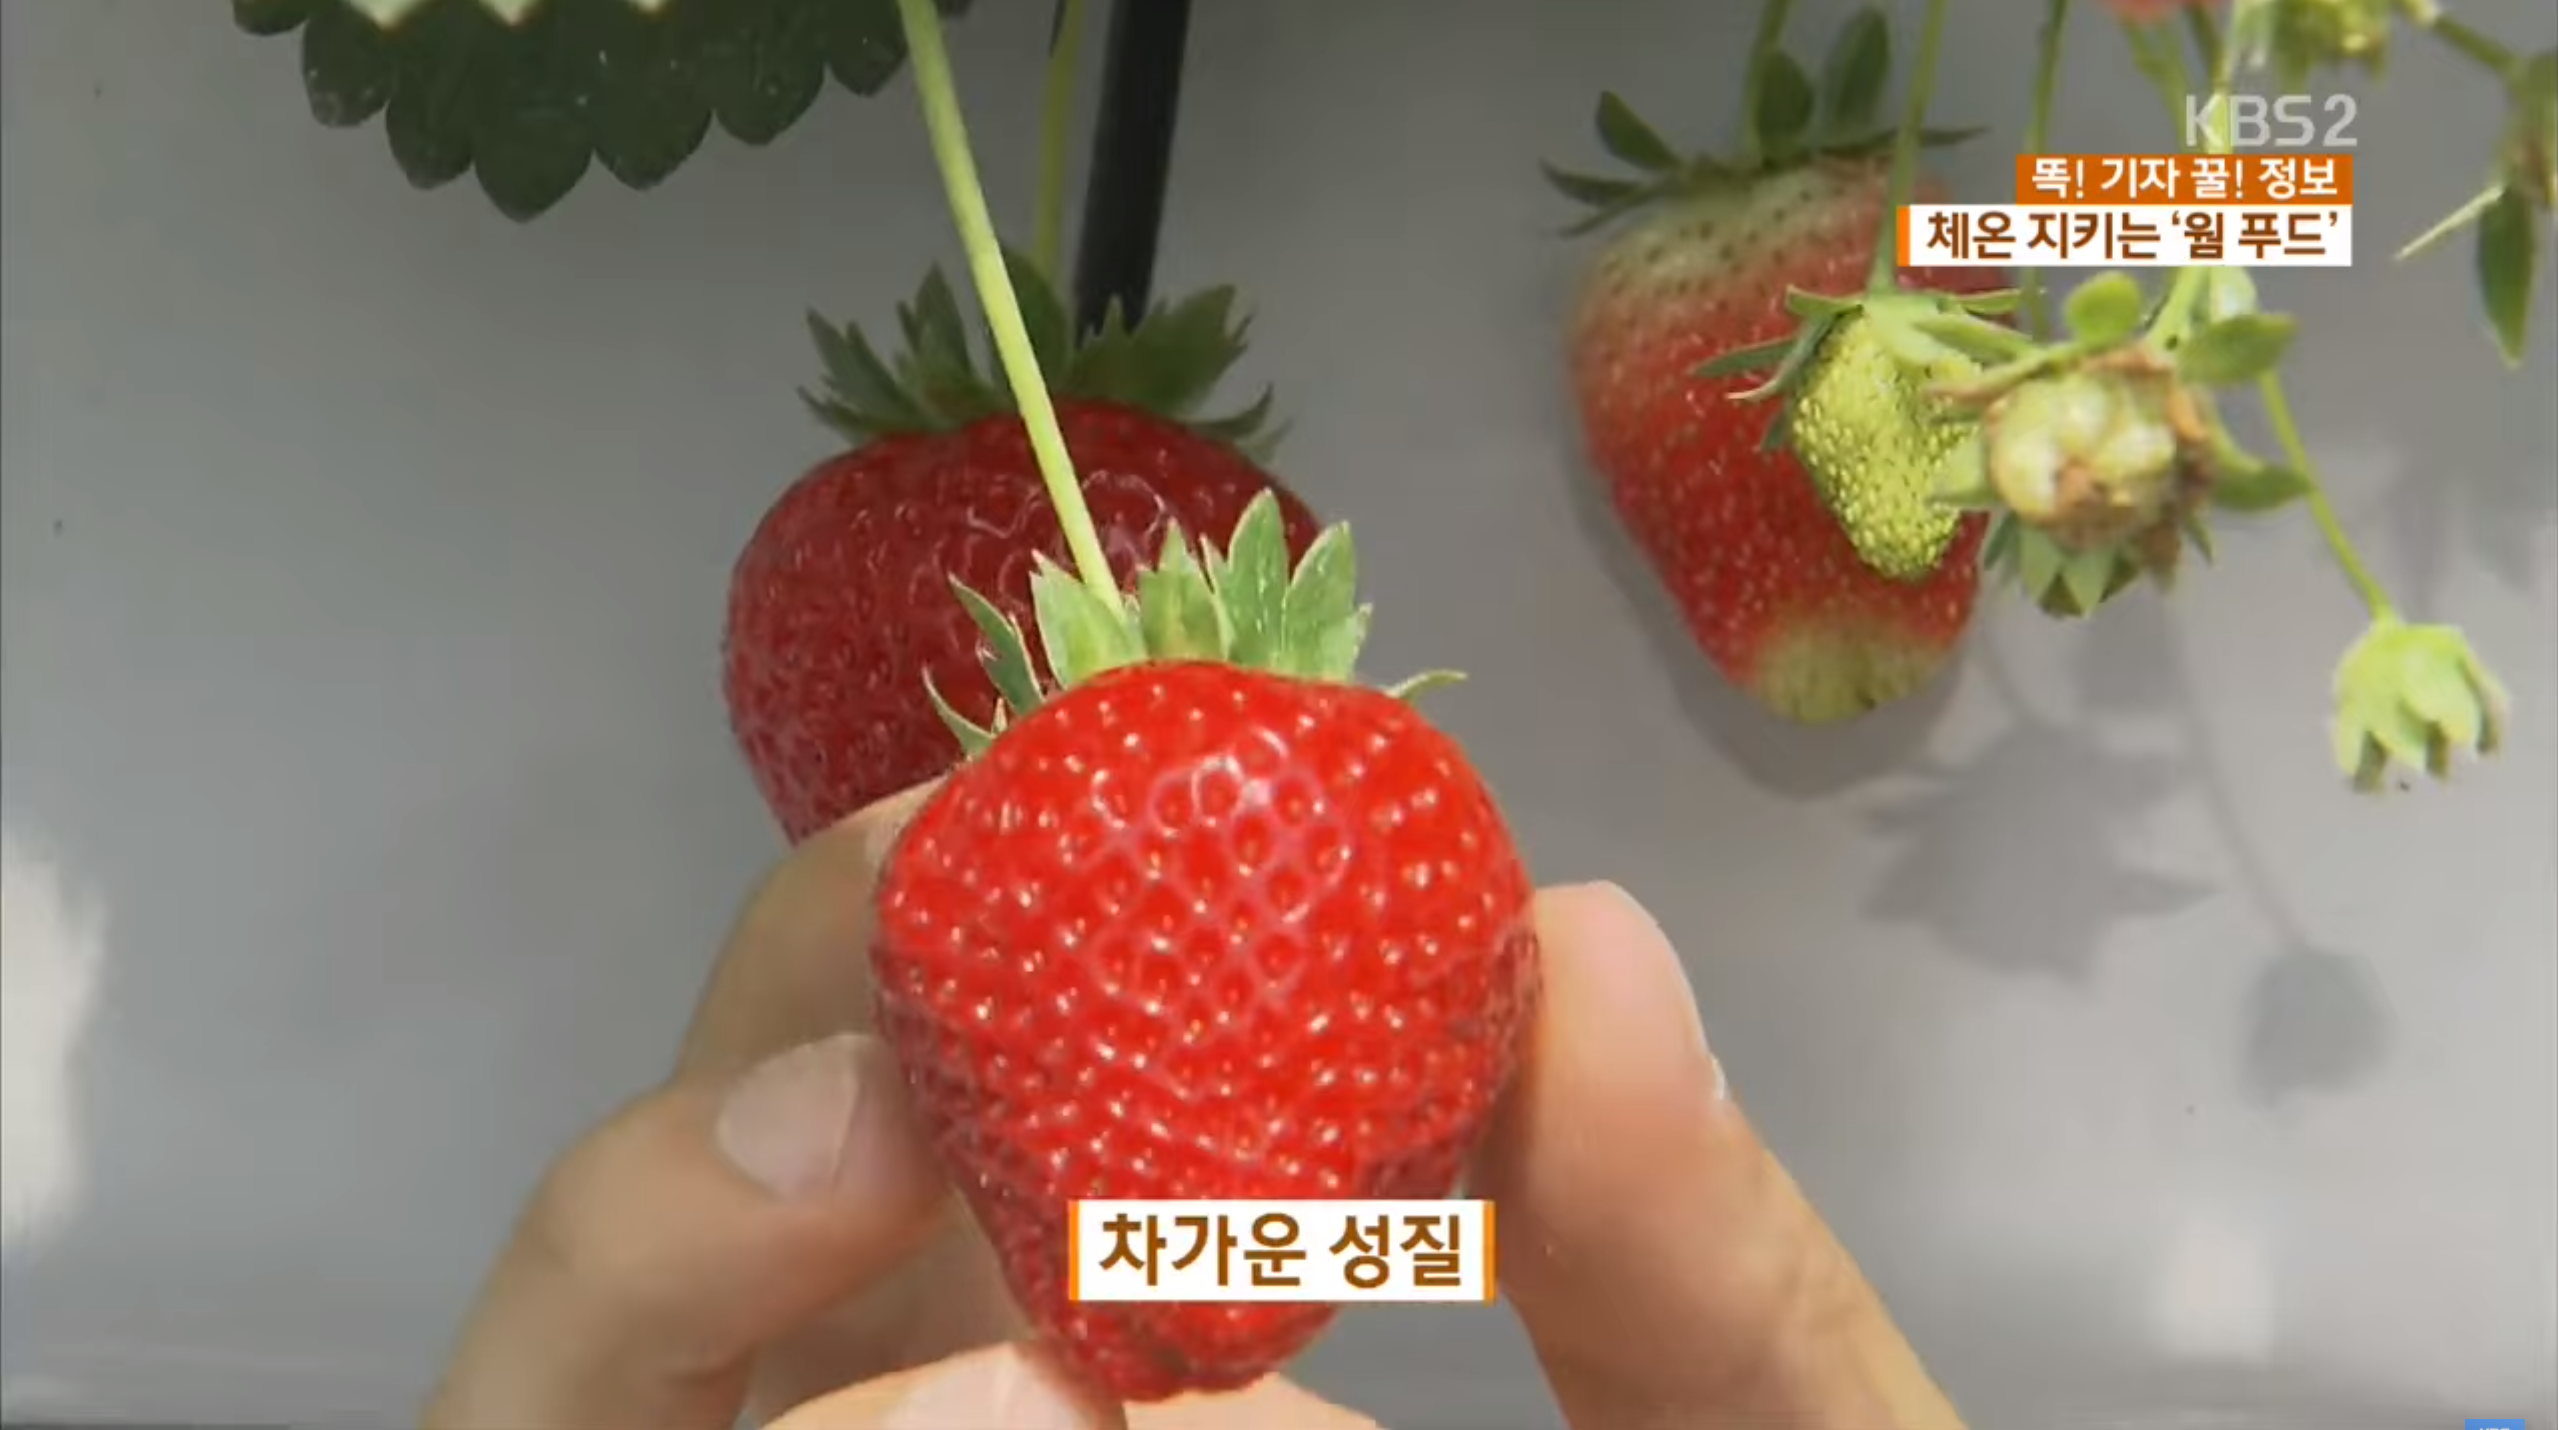 차가운 성질의 음식 딸기